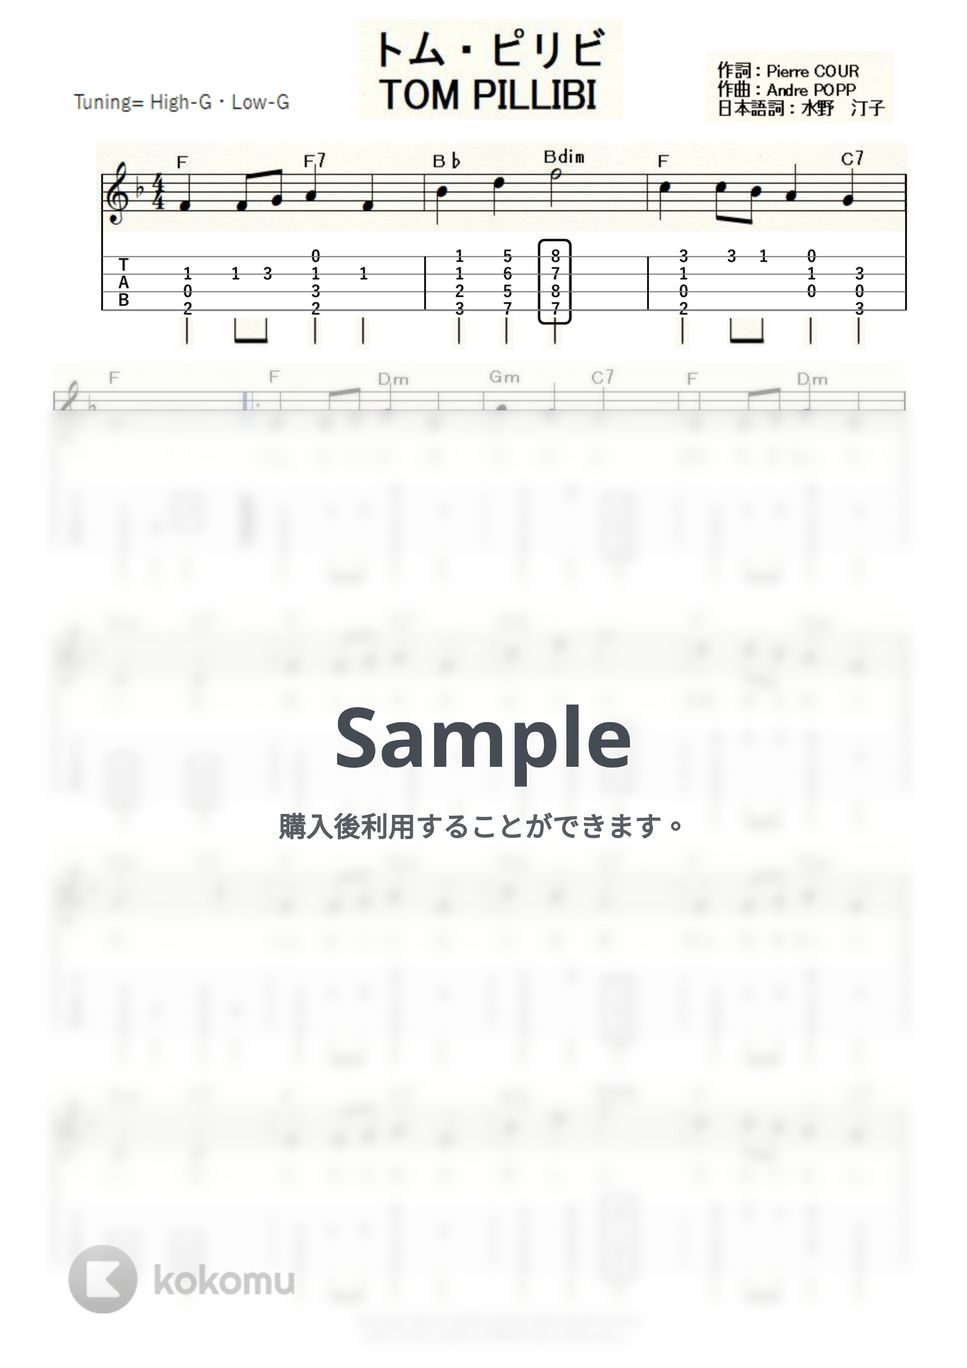 ジャクリーヌ・ボワイエ - トム・ピリビ～TOM PILLIBI～ (ｳｸﾚﾚｿﾛ/High-G・Low-G/中級) by ukulelepapa